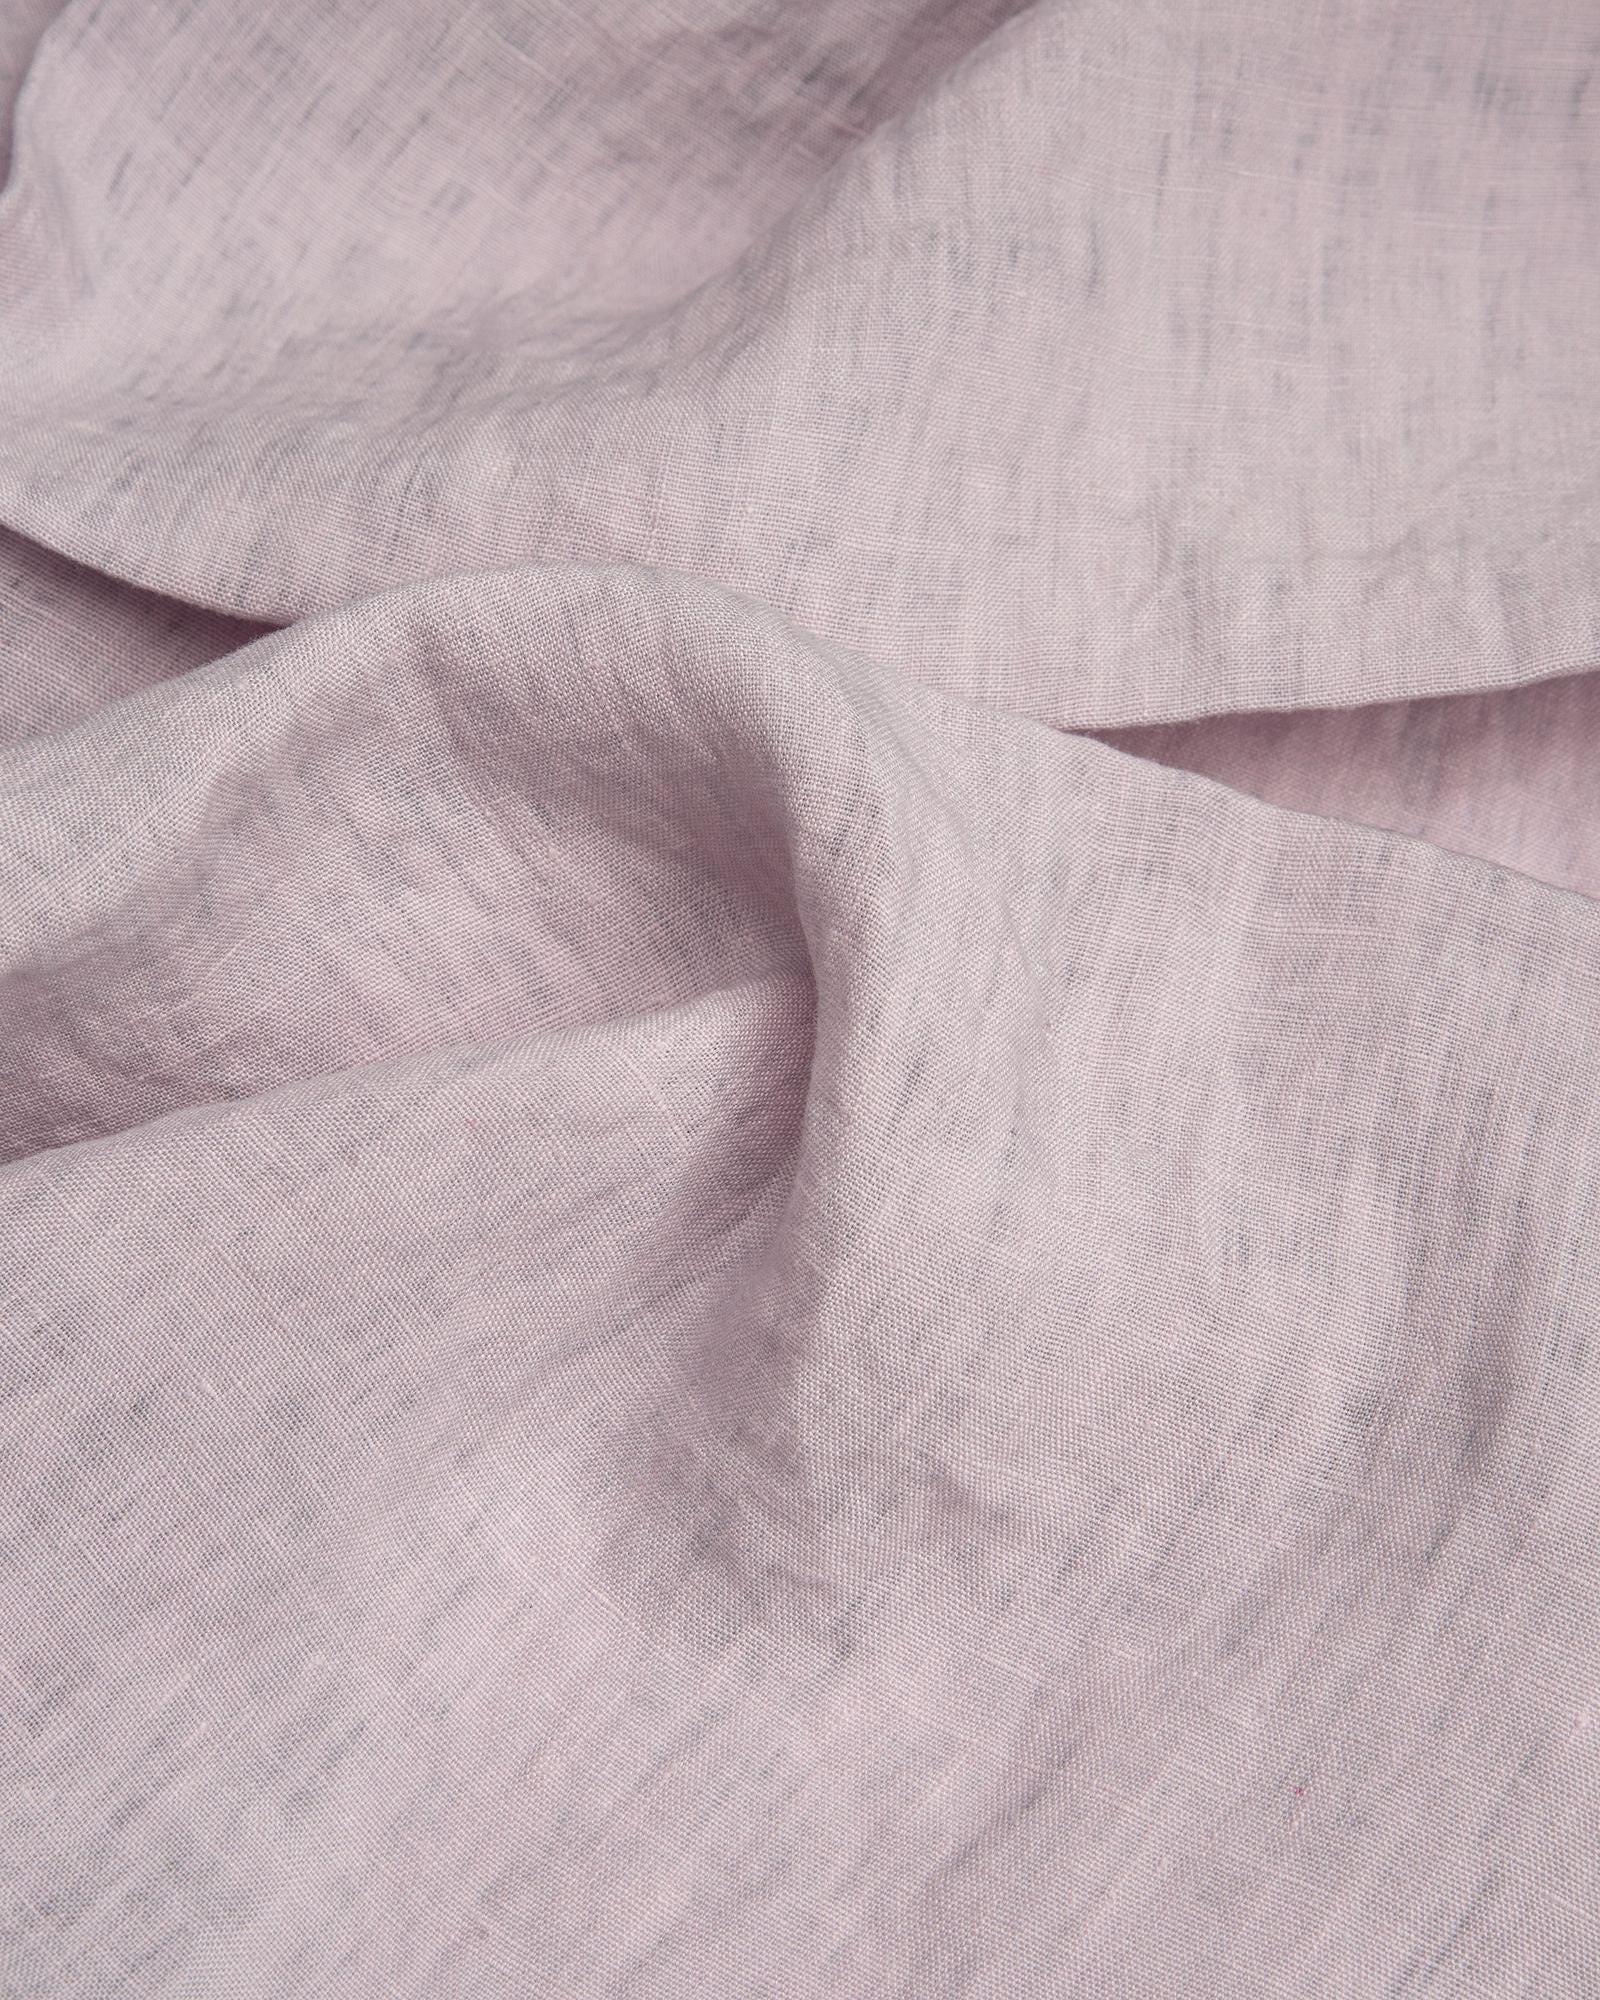 Größe: 40x 40 cm Farbe: lavendel #farbe_lavendel